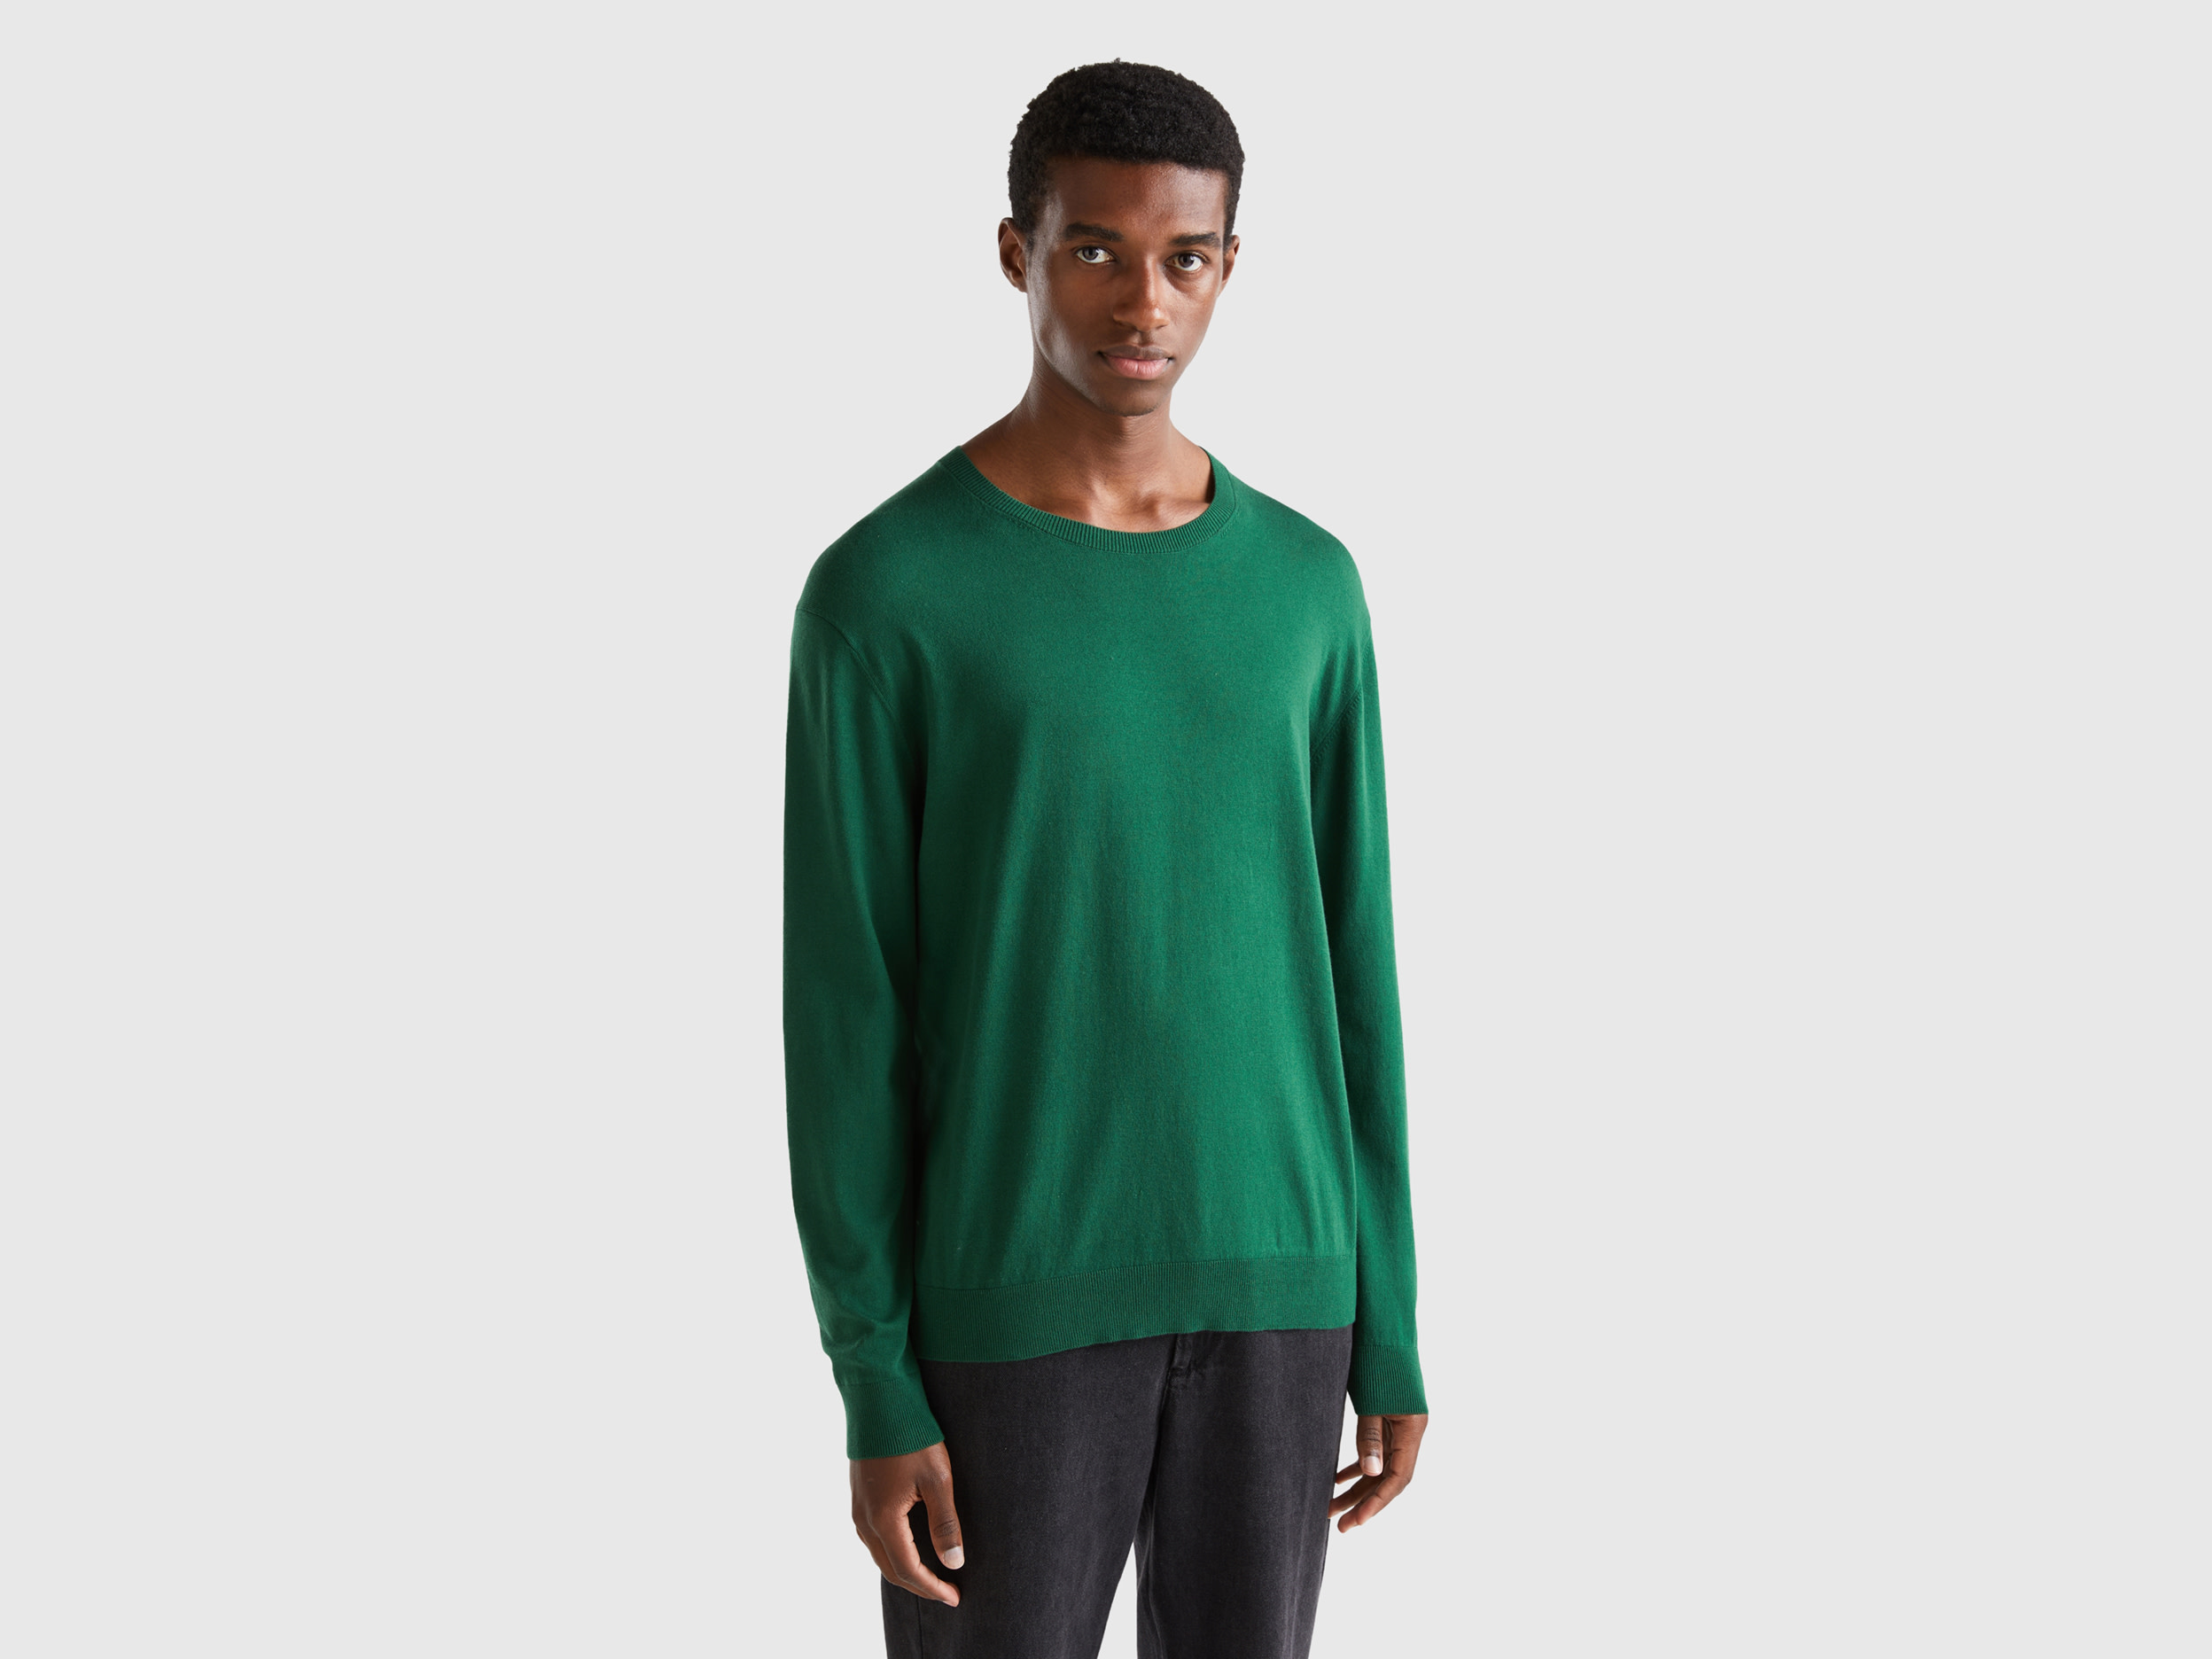 Benetton, Crew Neck Sweater In Lightweight Cotton Blend, size S, Dark Green, Men